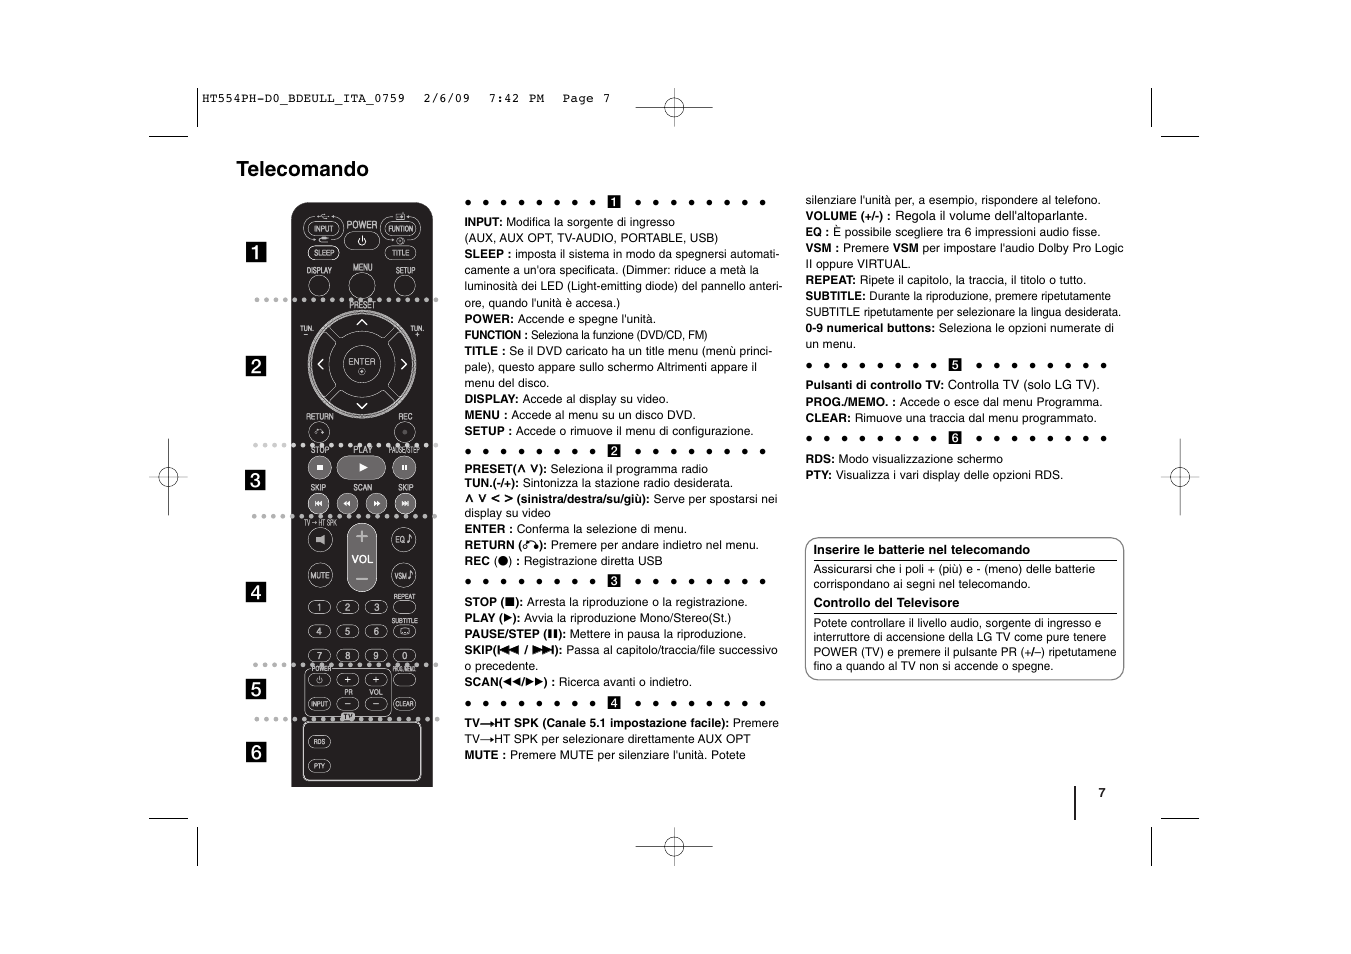 Telecomando | LG HT554TM Manuale d'uso | Pagina 7 / 22